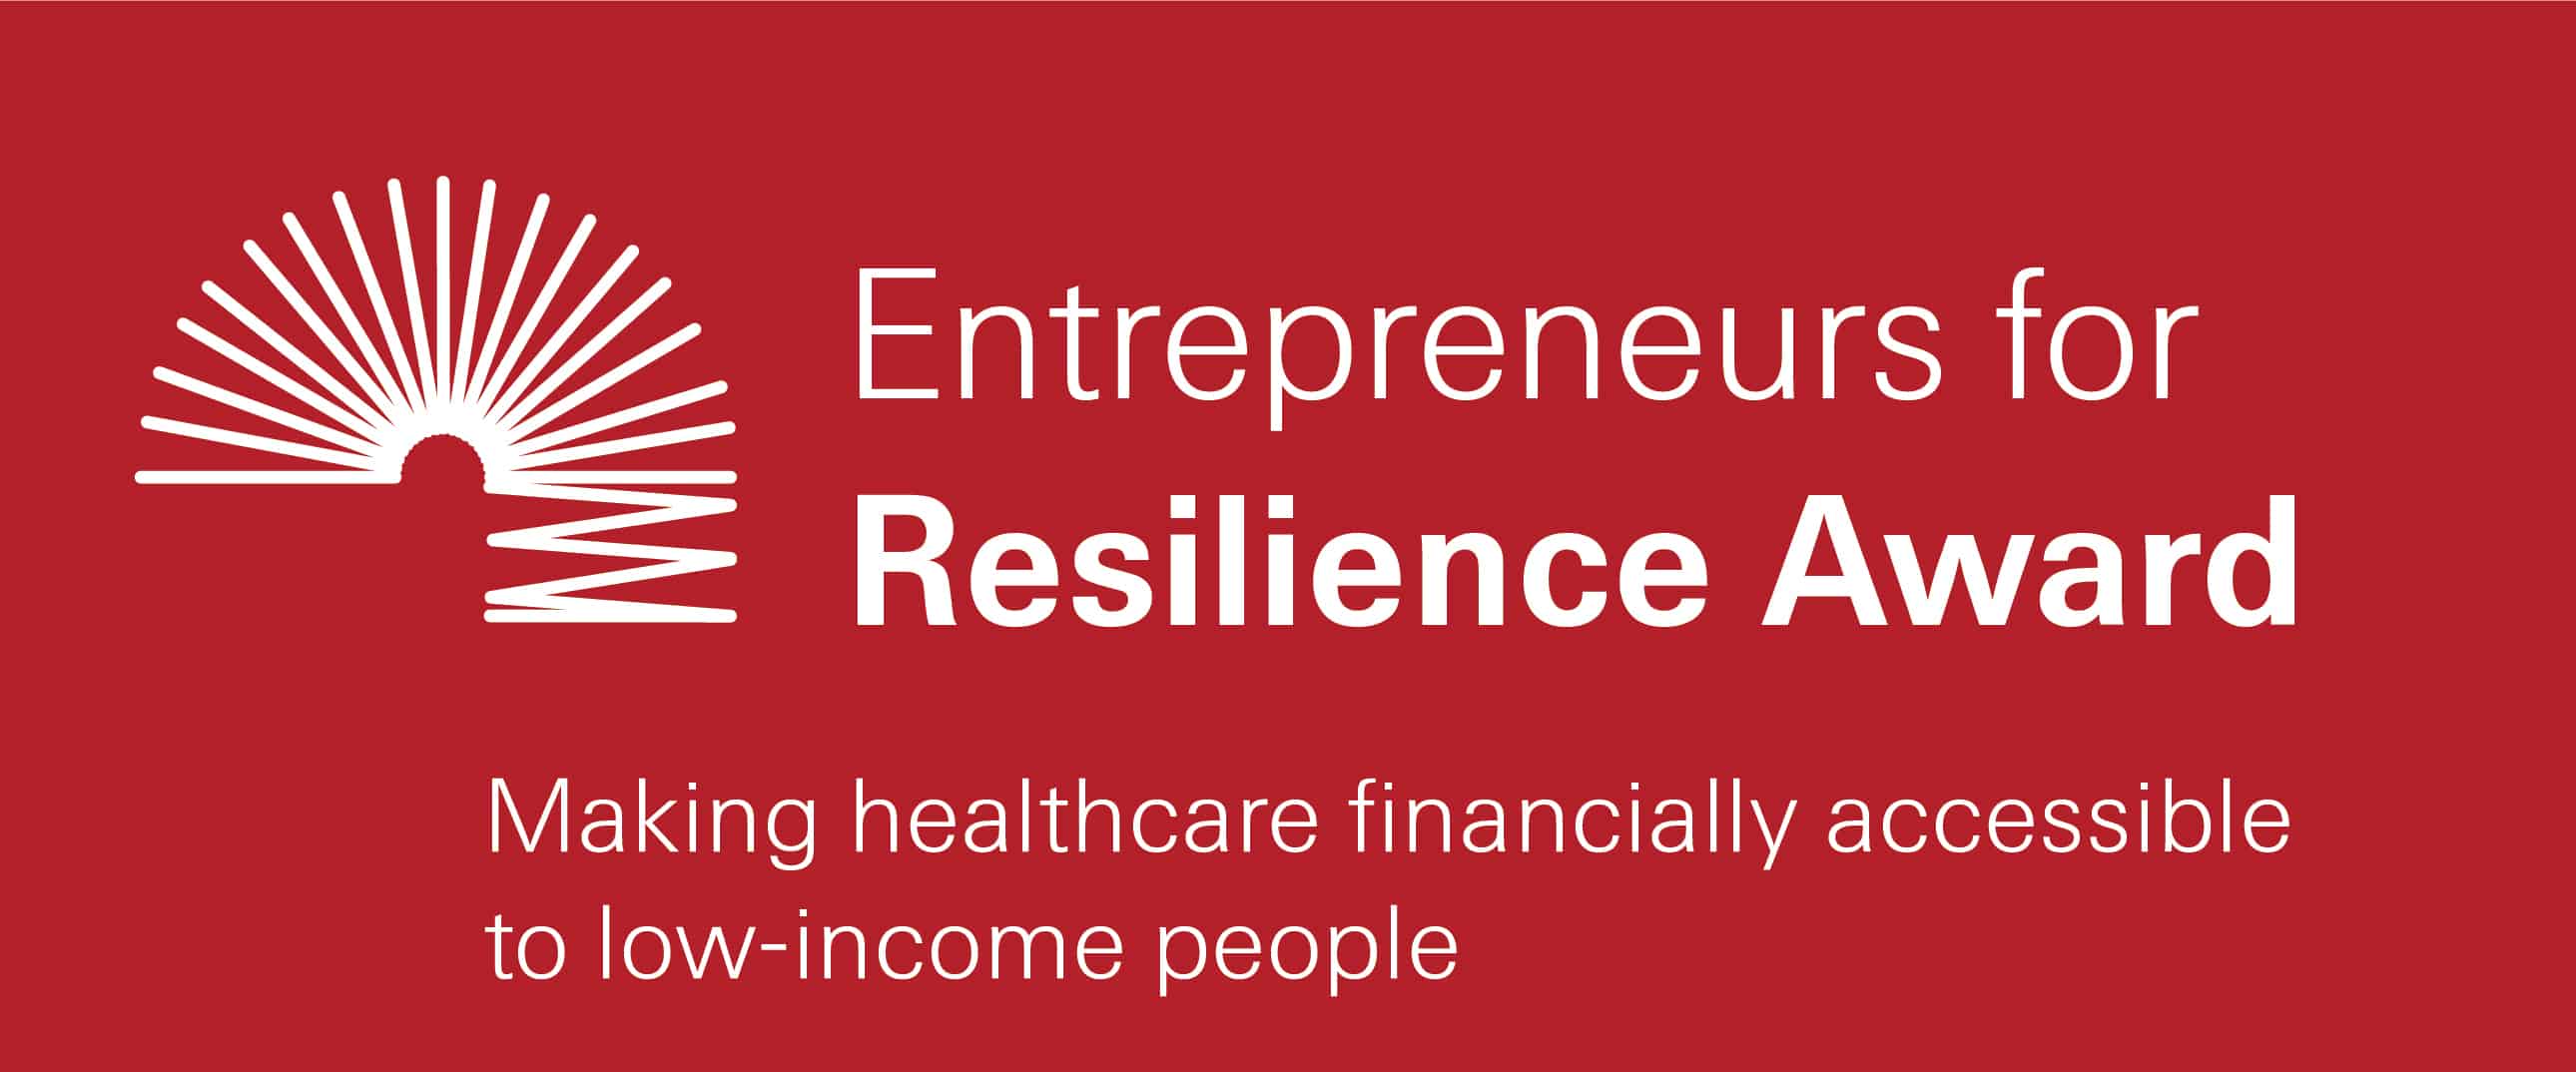 Entrepreneurs for Resilience Award 2021